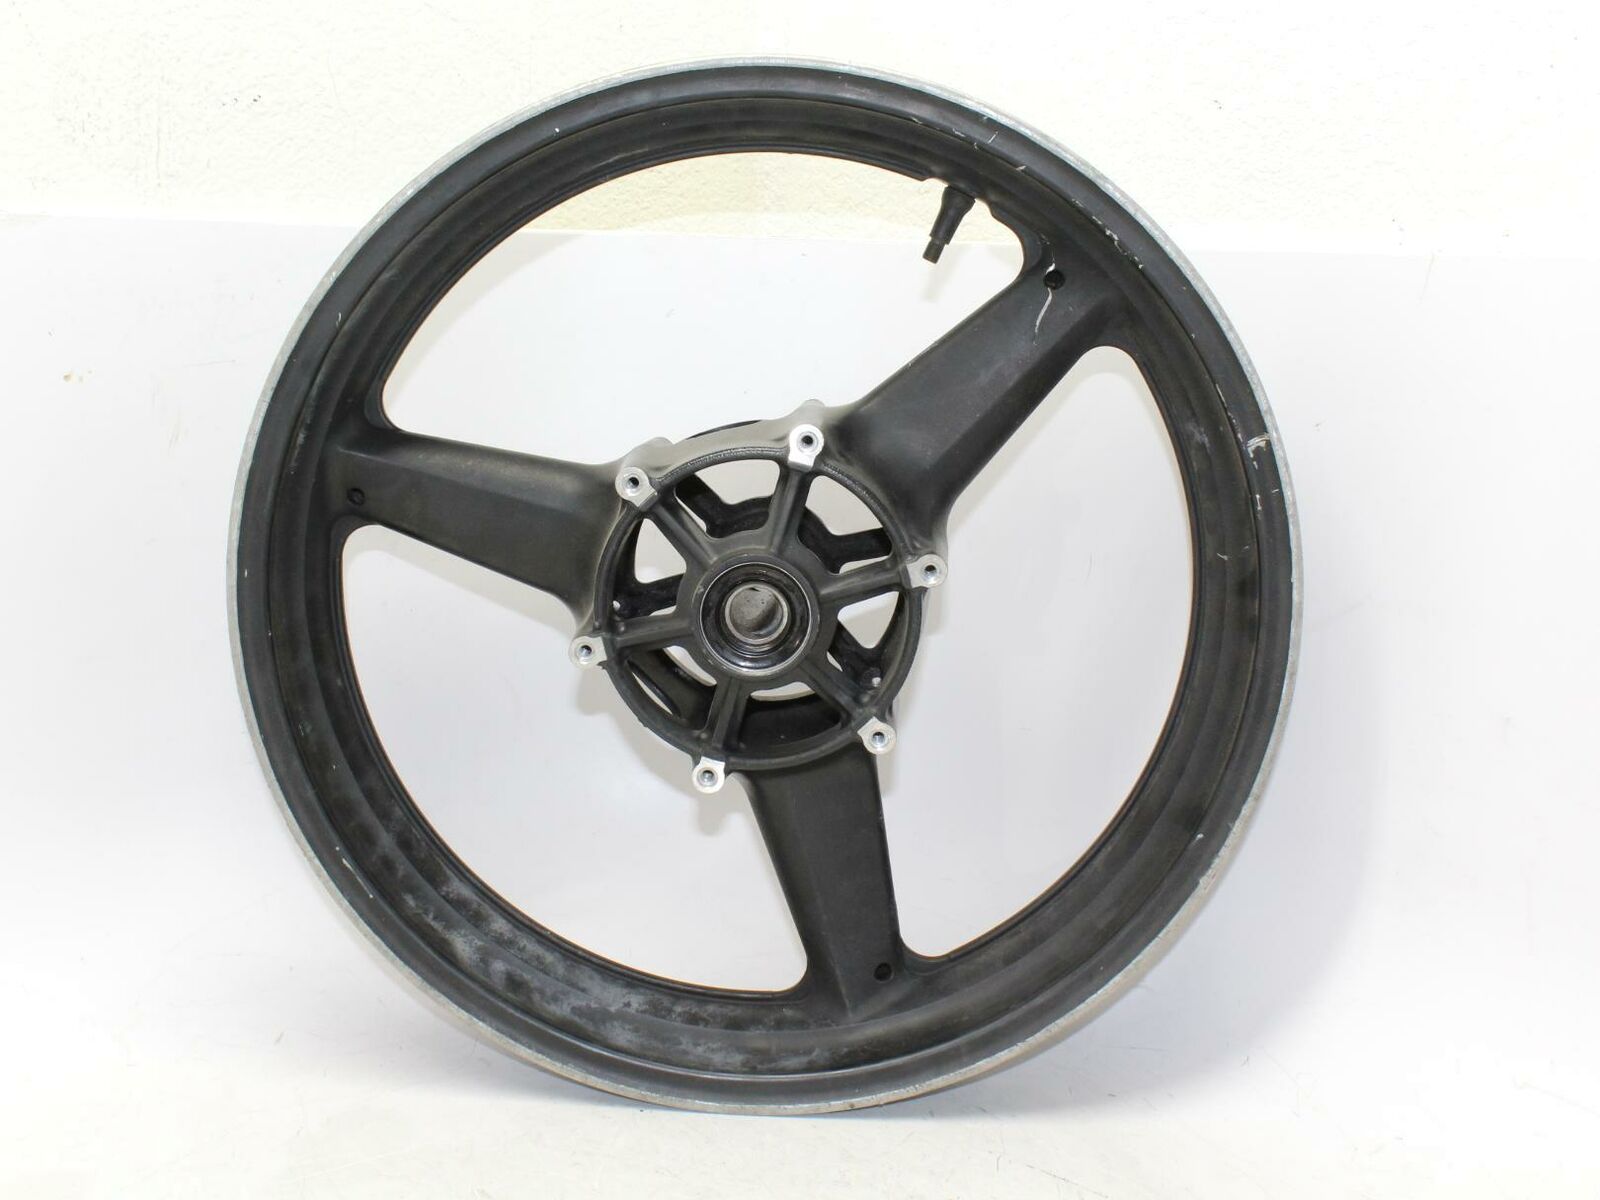 03-06 Suzuki Gsxr600 Front Wheel Rim OEM